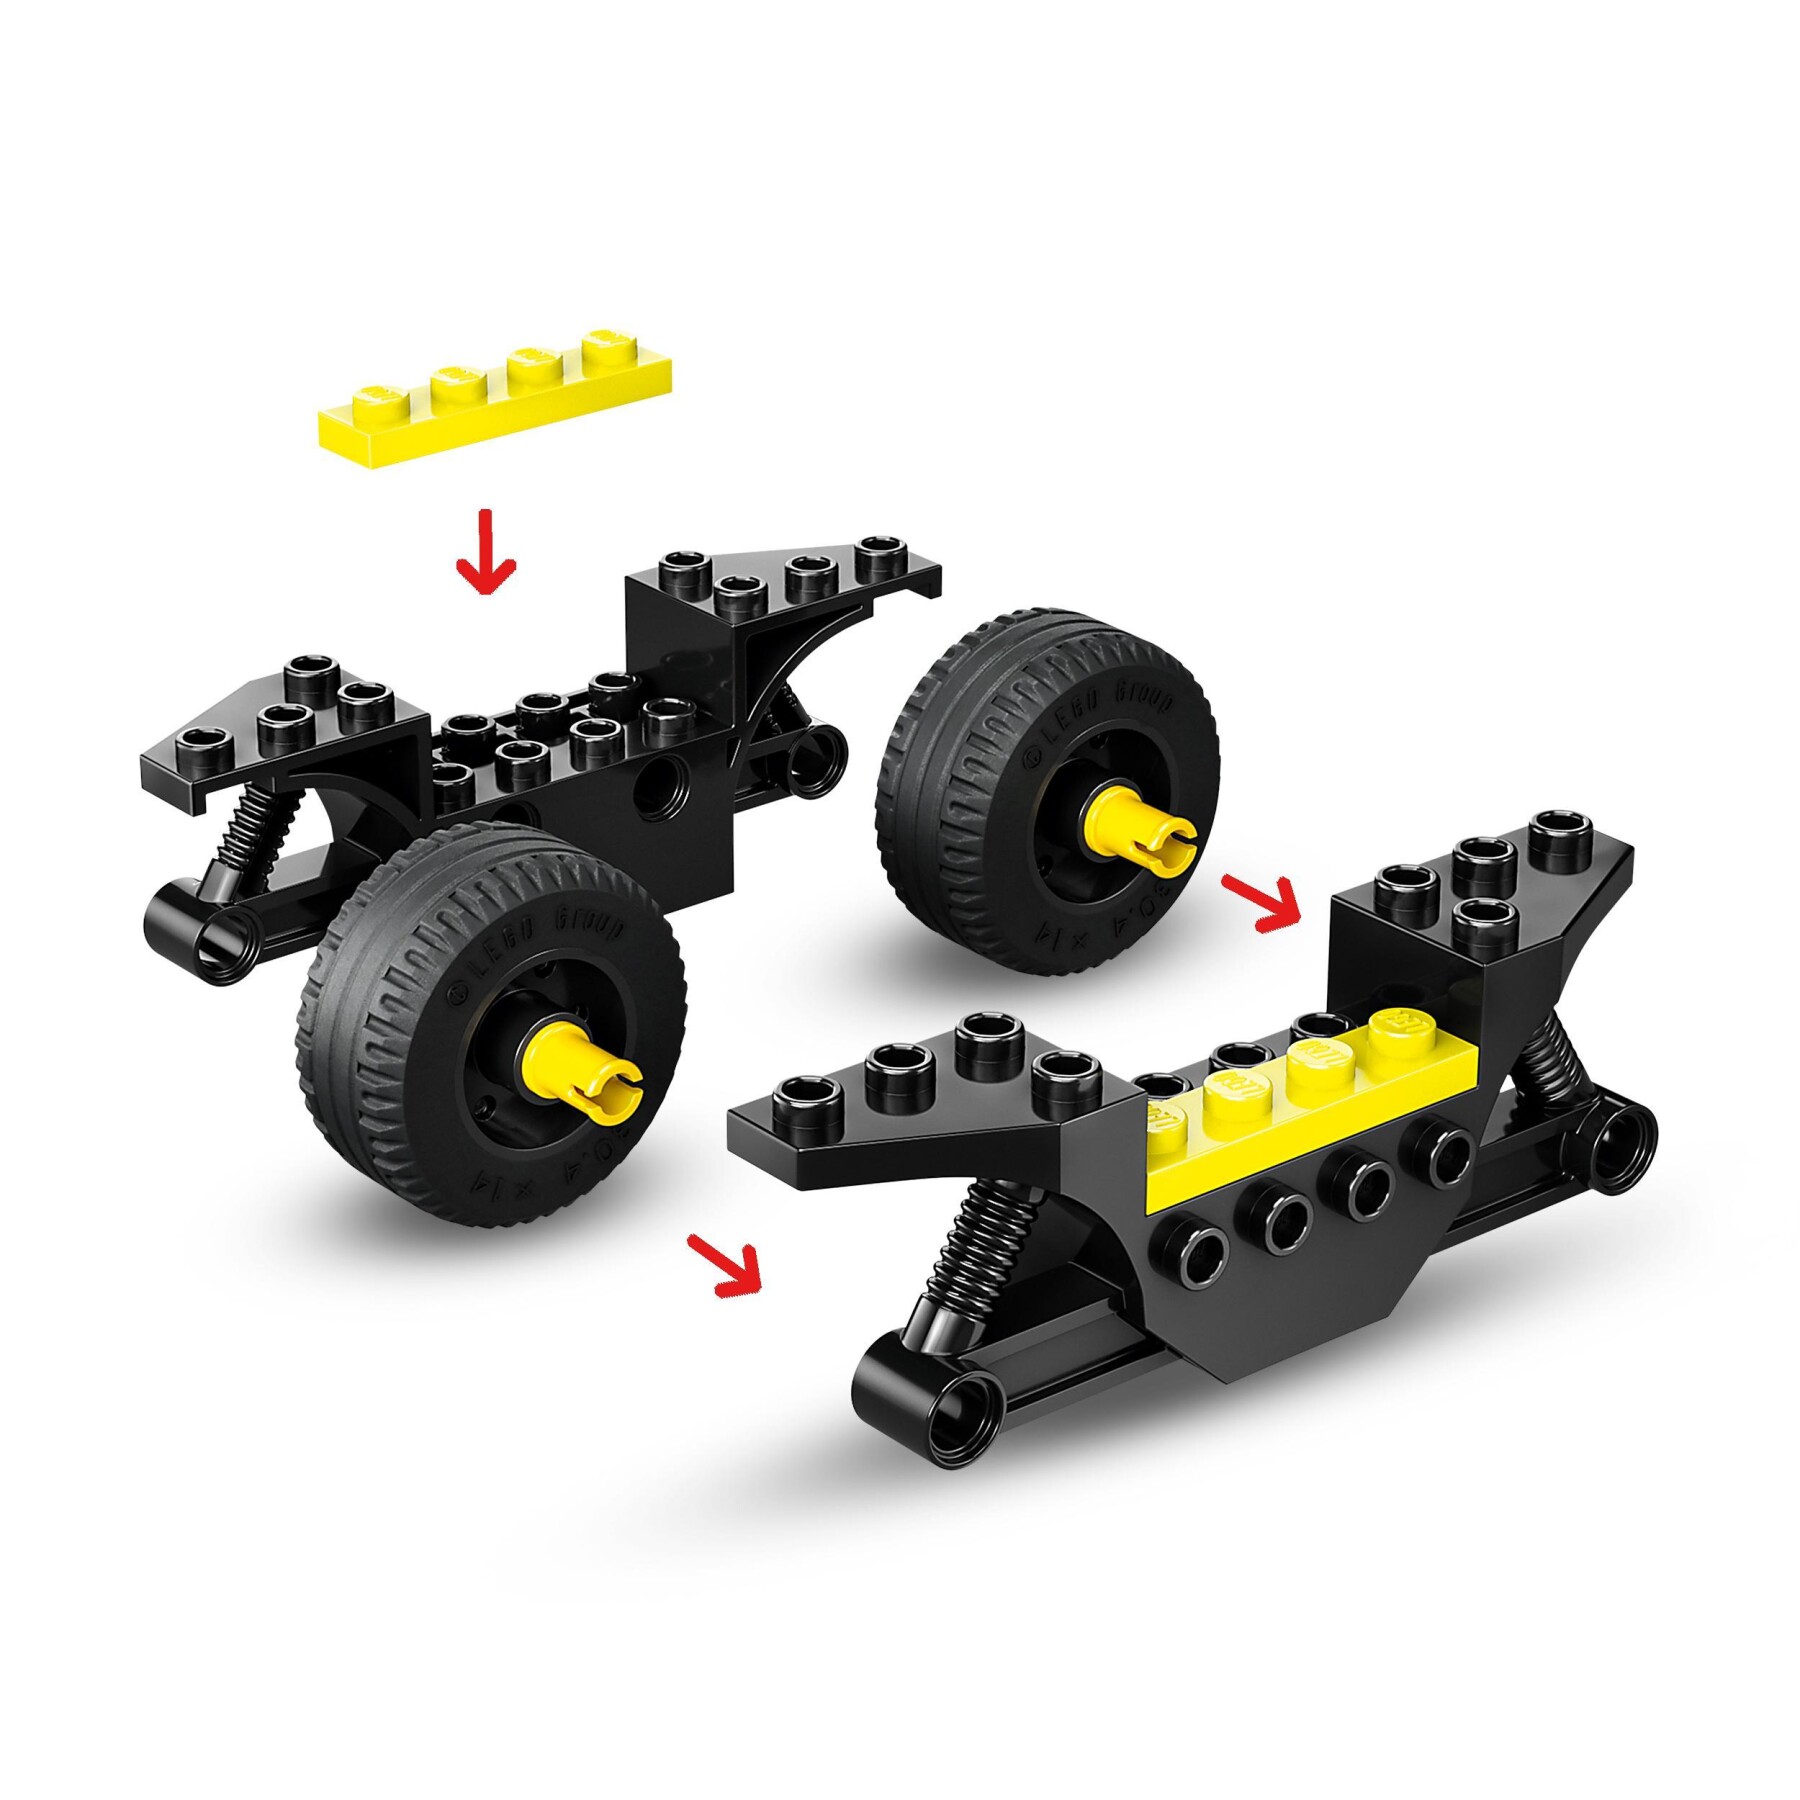 Lego city 60410 motocicletta dei pompieri da soccorso, giochi per bambini 4+ anni con moto giocattolo, 2 minifigure ed estintore - LEGO CITY